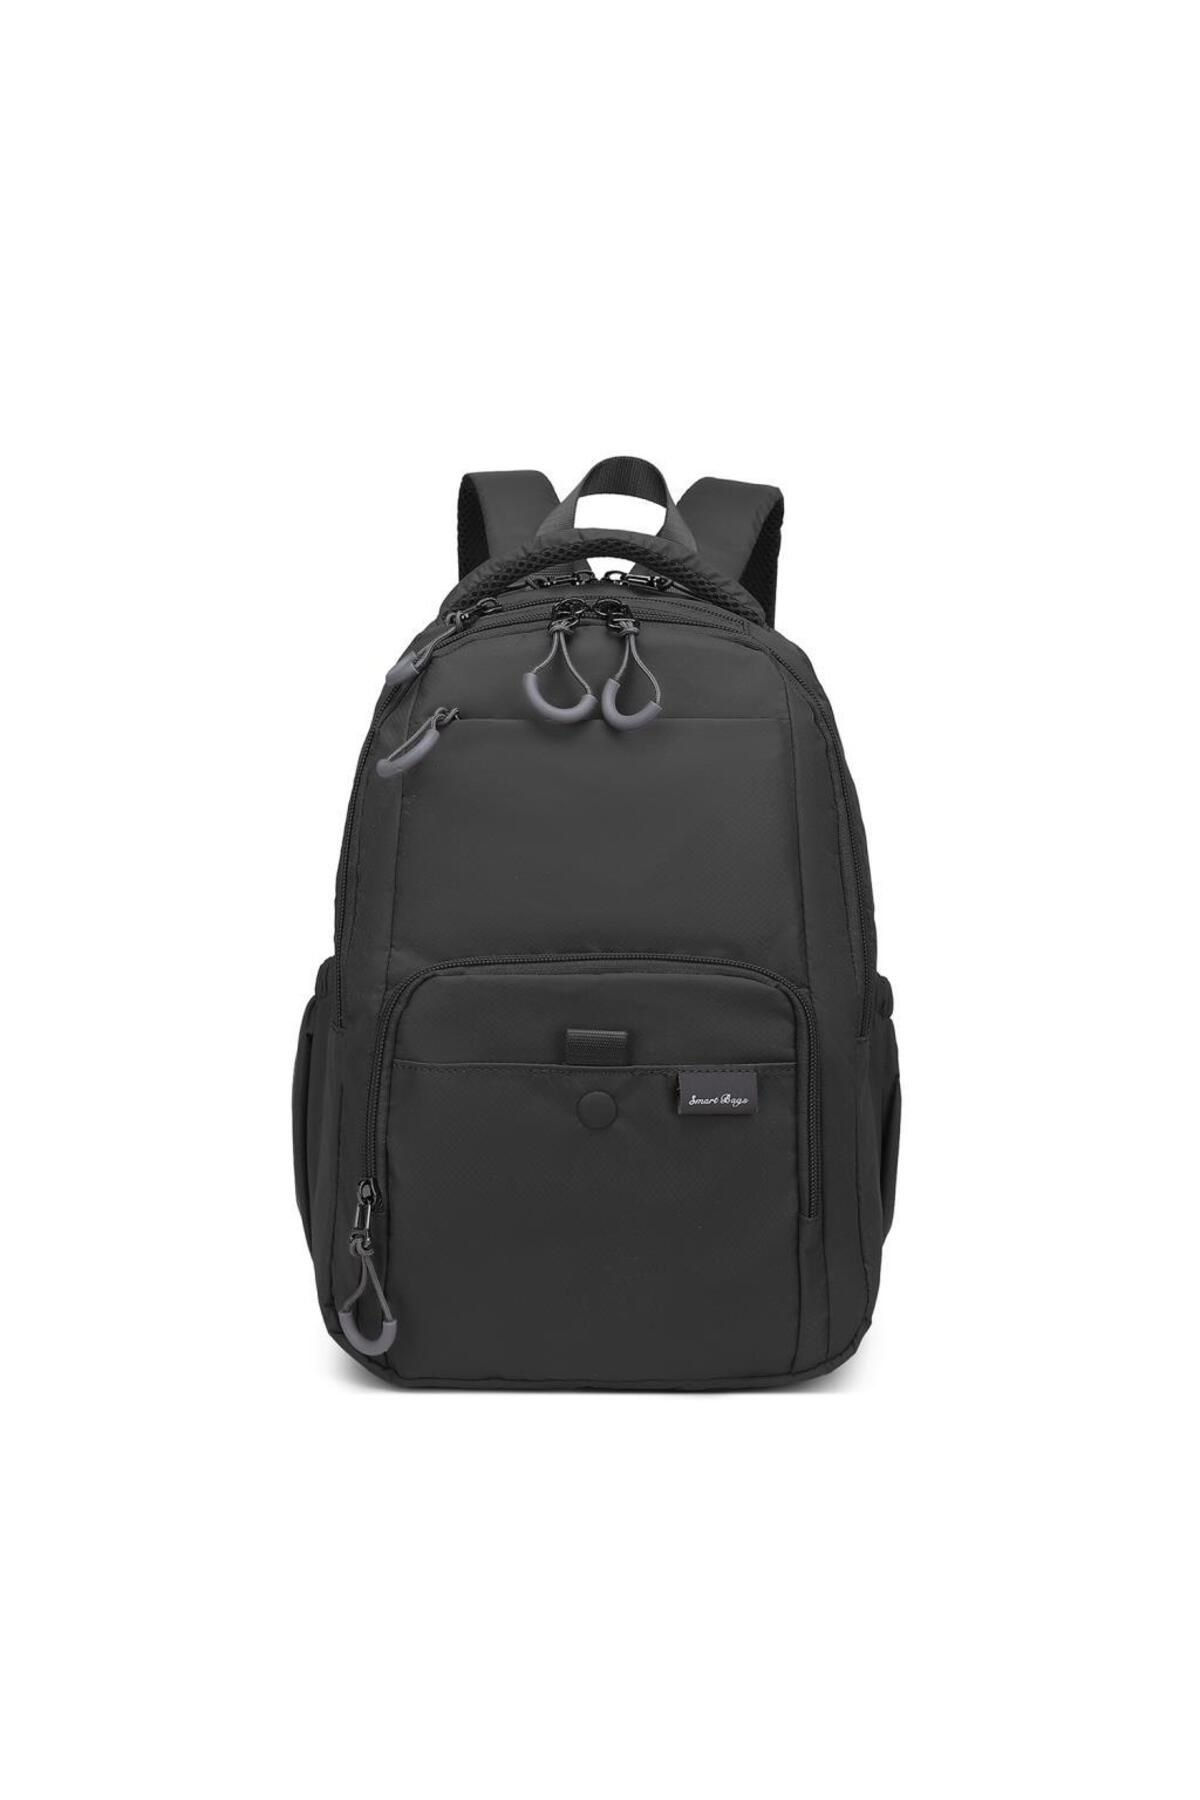 Smart Bags Ekstra Hafif Orta Boy Uniseks Sırt Çantası 3243